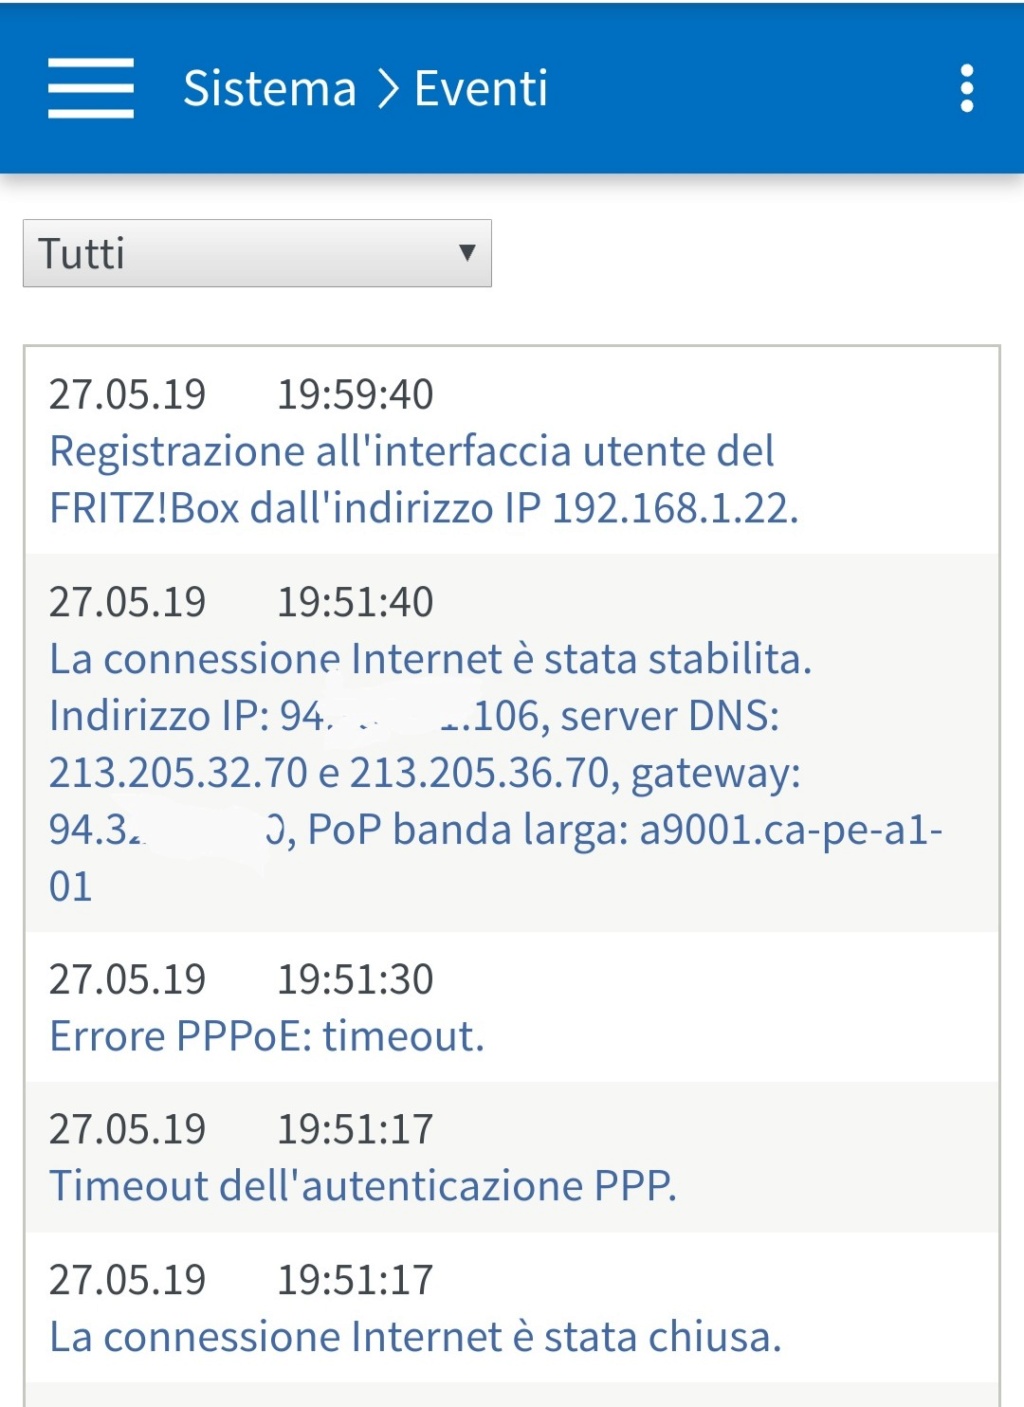 Timeout dell'autenticazione PPP con Tiscali Fttc Screen11